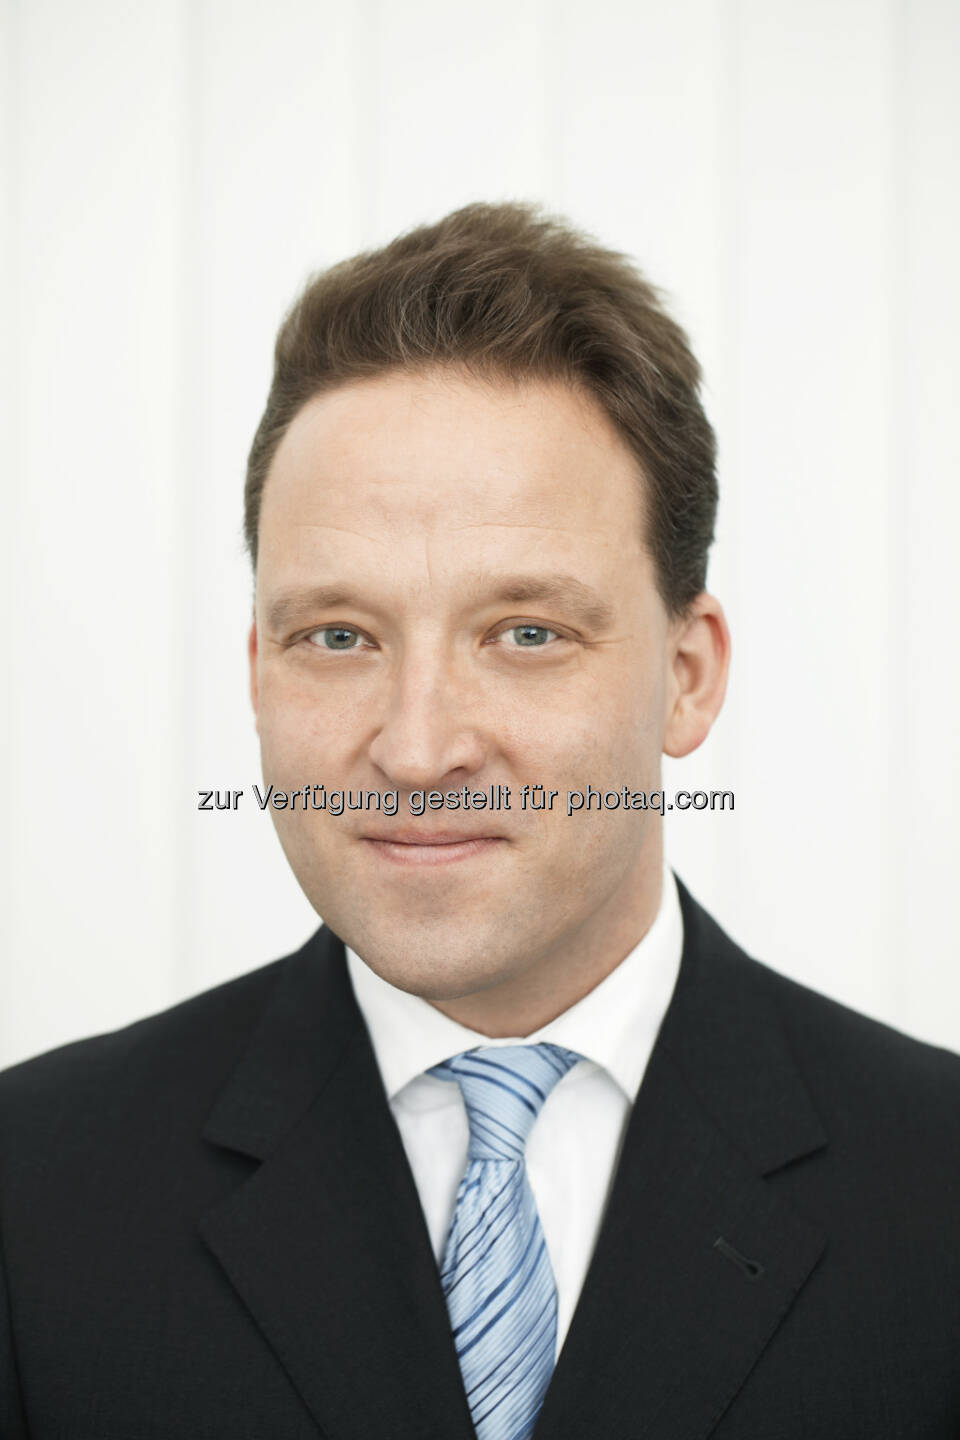 Matthias Zachert, derzeit Finanzvorstand der Merck KGaA in Darmstadt, wird sein Amt als neuer Vorsitzender des Vorstands der Lanxess AG am 1. April 2014 antreten.  